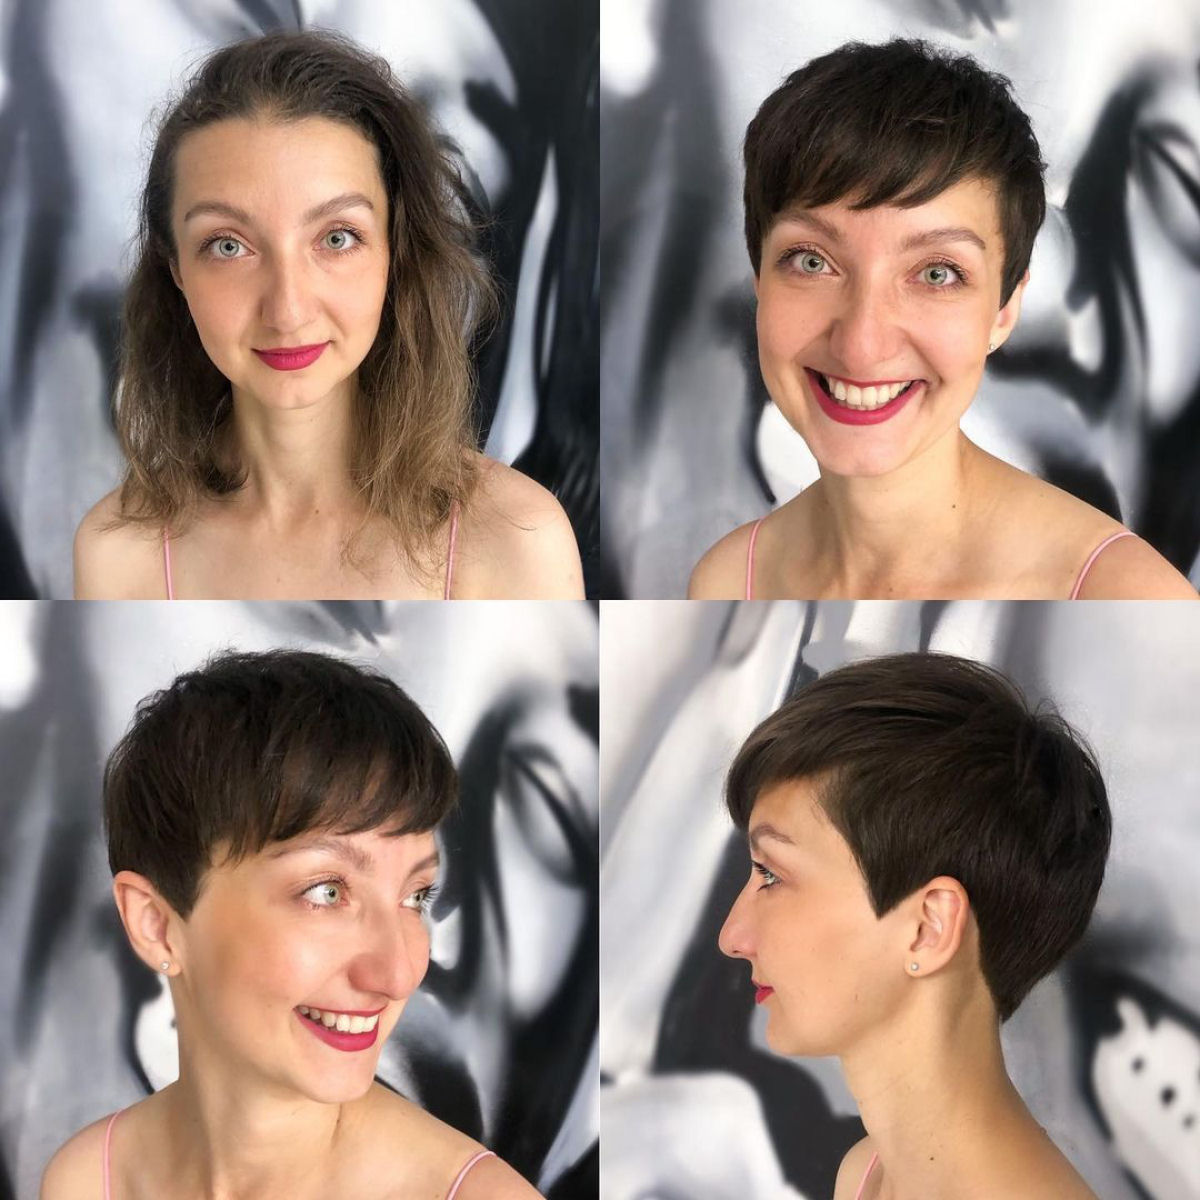 Cabeleireira moscovita demonstra que a beleza não se mede pelo comprimento do cabelo 04